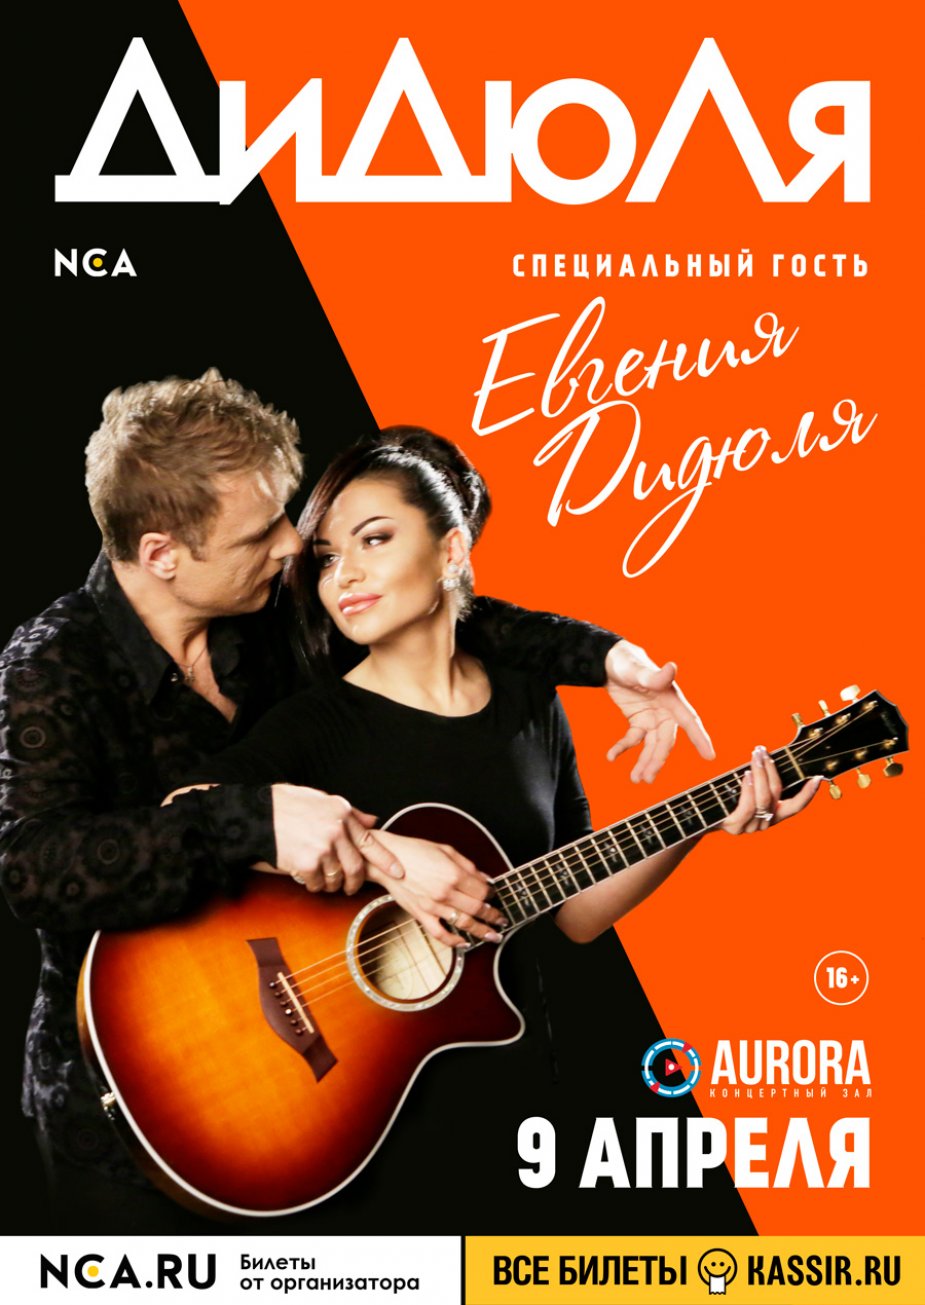 NCA представляет: Aurora Concert Hall  -  ДиДюЛя